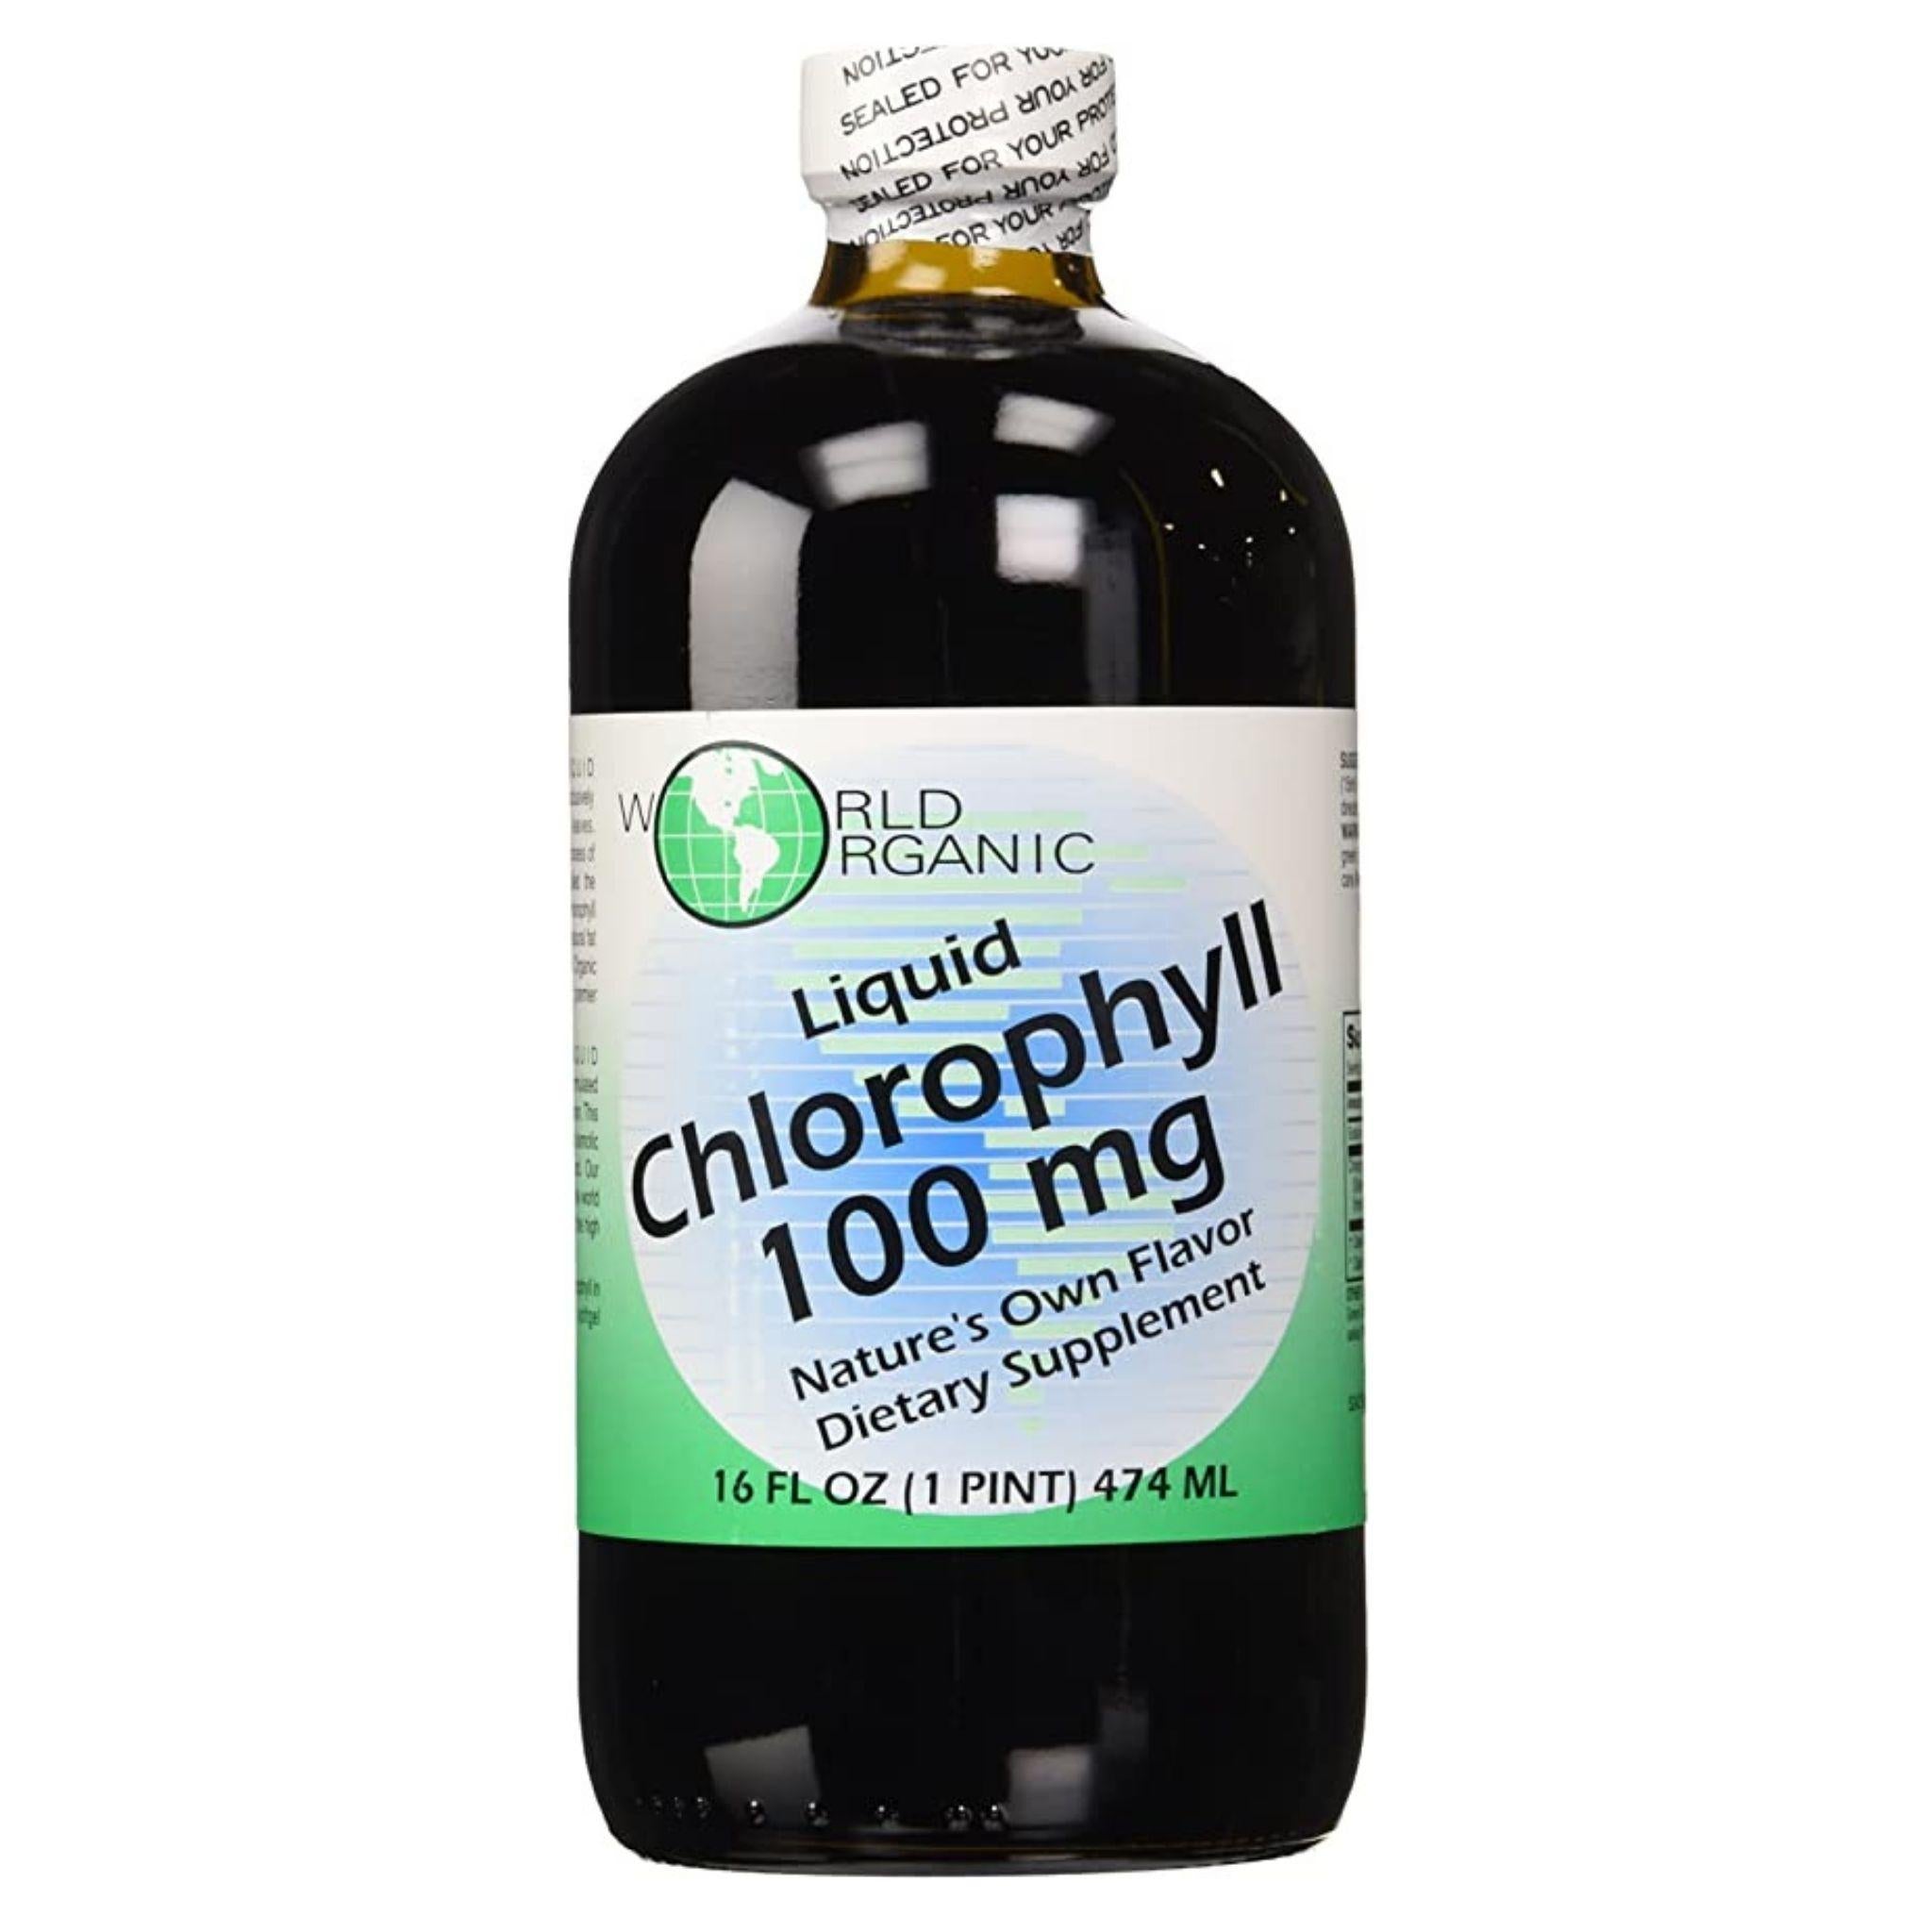 World Organic Liquid Chlorophyll 100 mg - 16 oz.